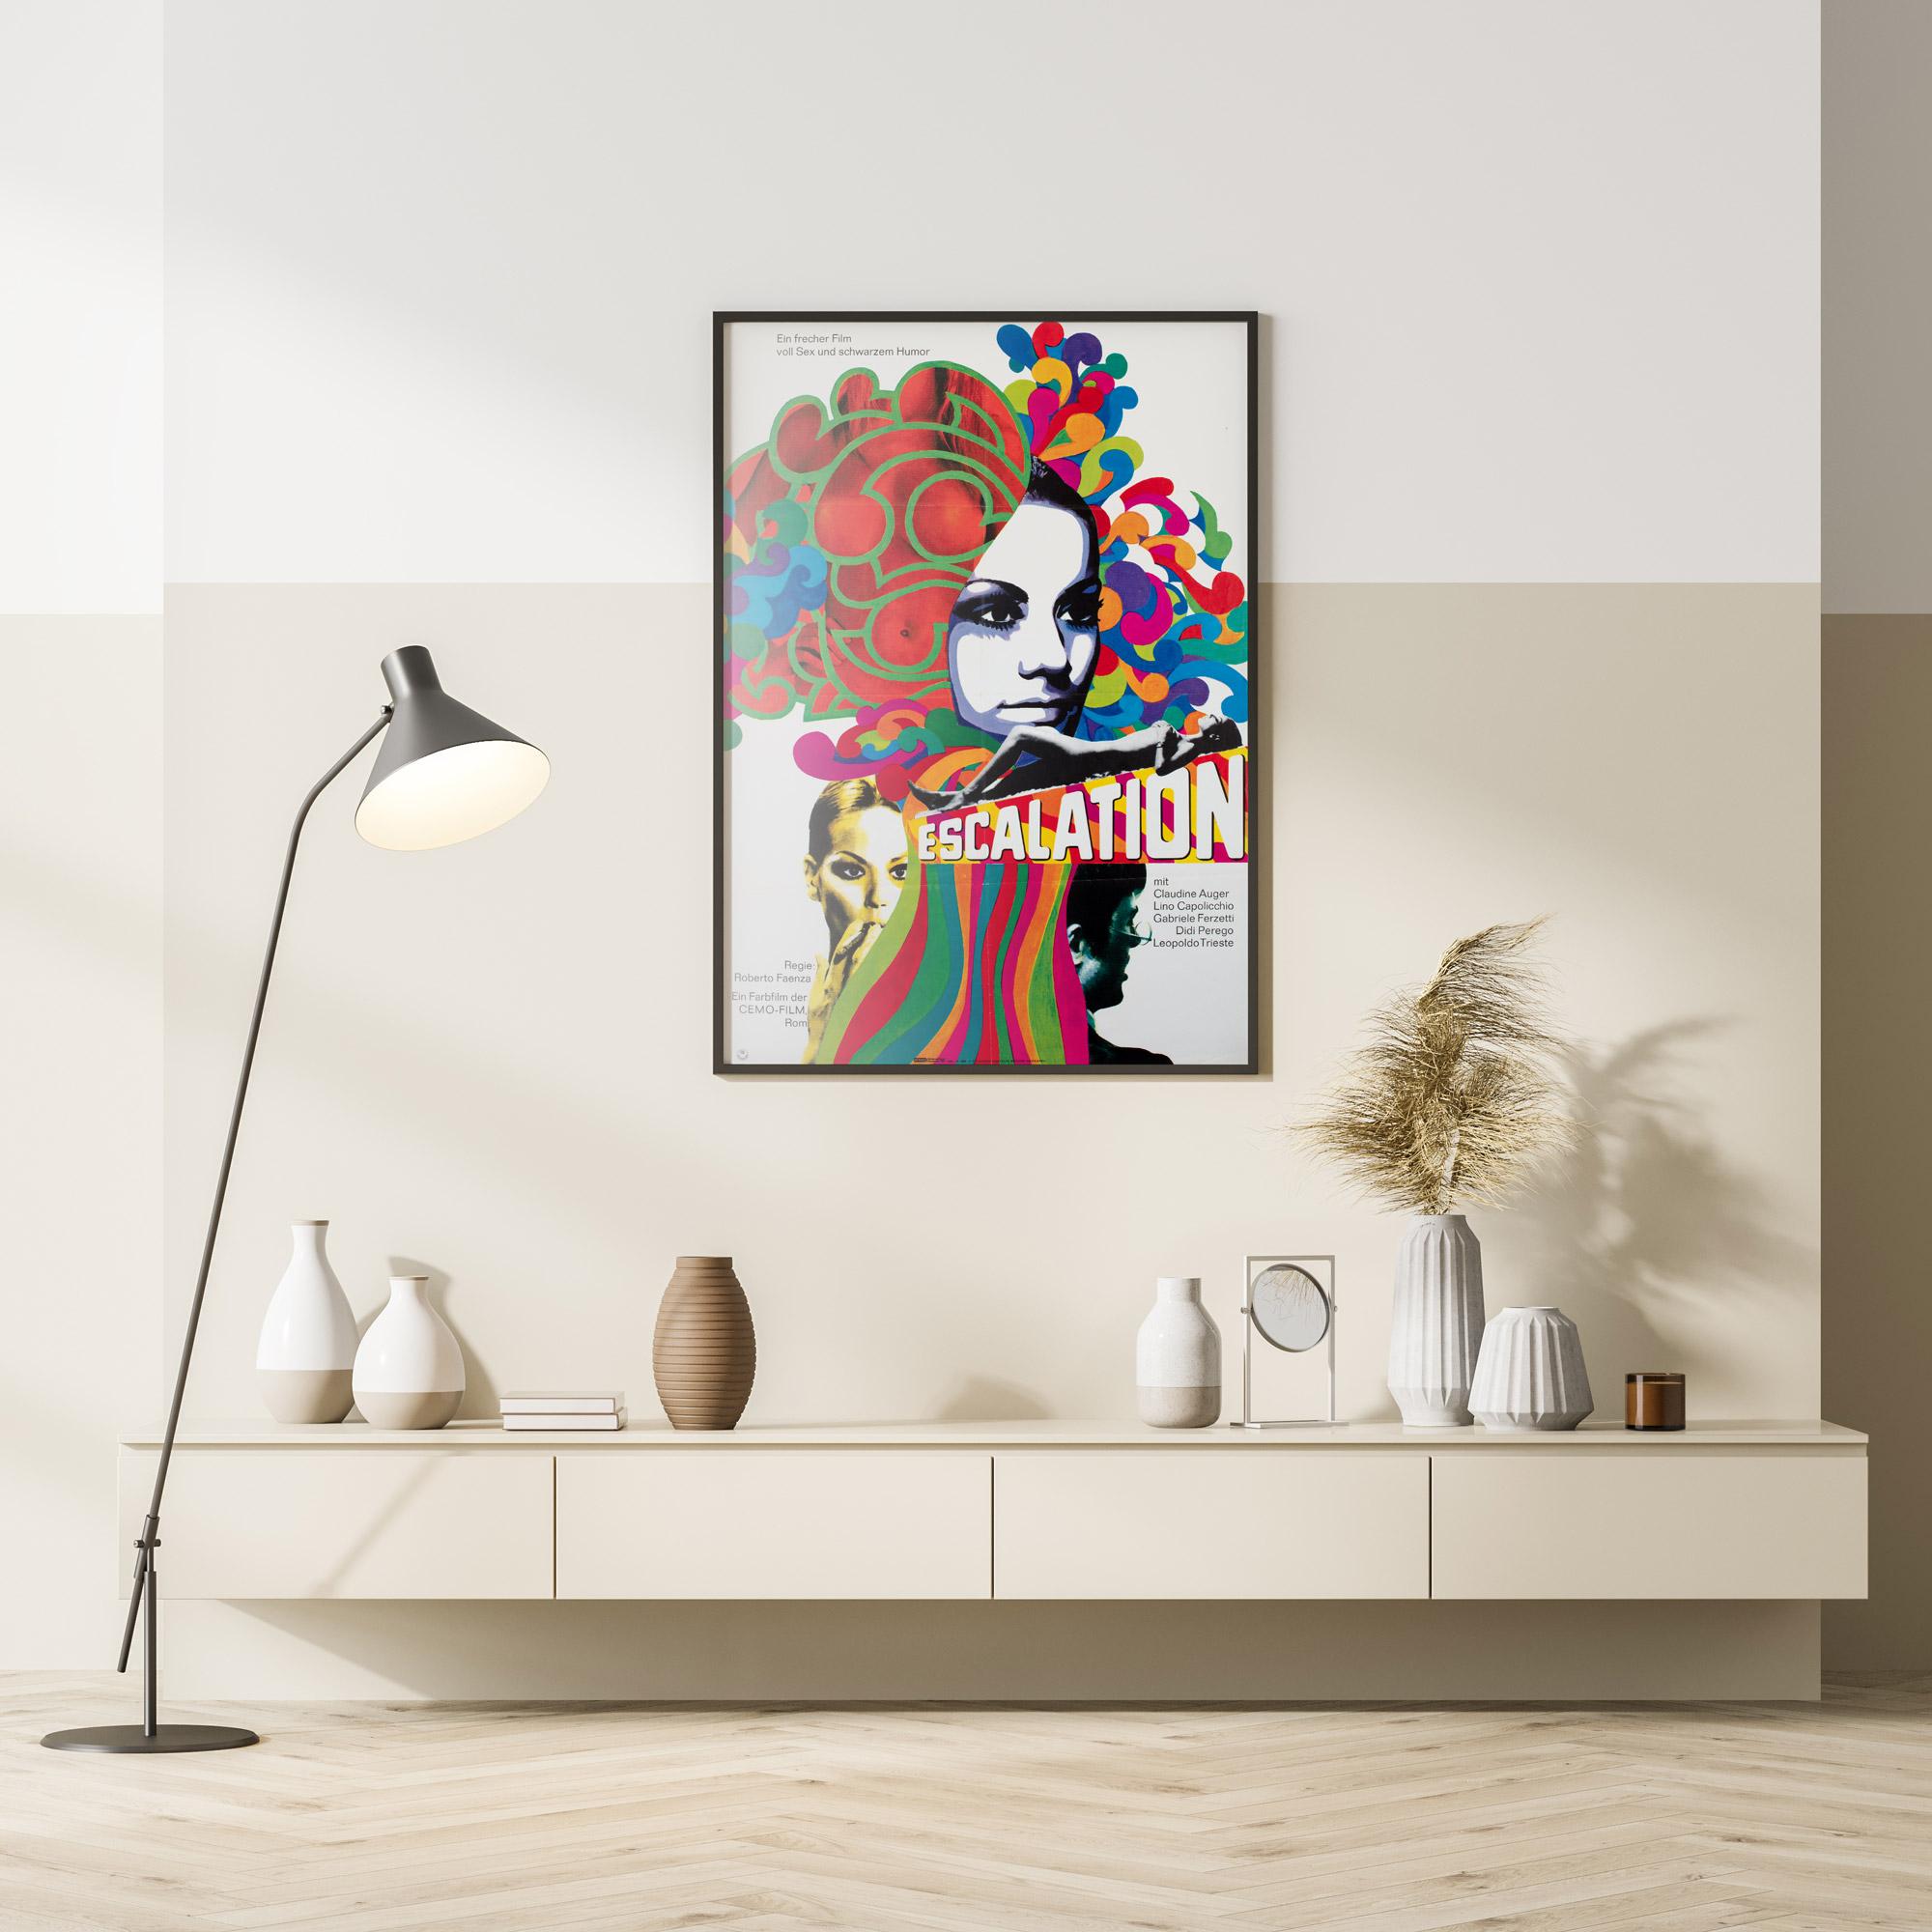 Un design merveilleusement psychédélique et sexy sur l'affiche allemande du film Escalation, une série de folles années 60 de Roberto Faenza, dont la musique est signée Ennio Morricone.

Cette affiche de cinéma vintage originale mesure 23 1/4 x 33